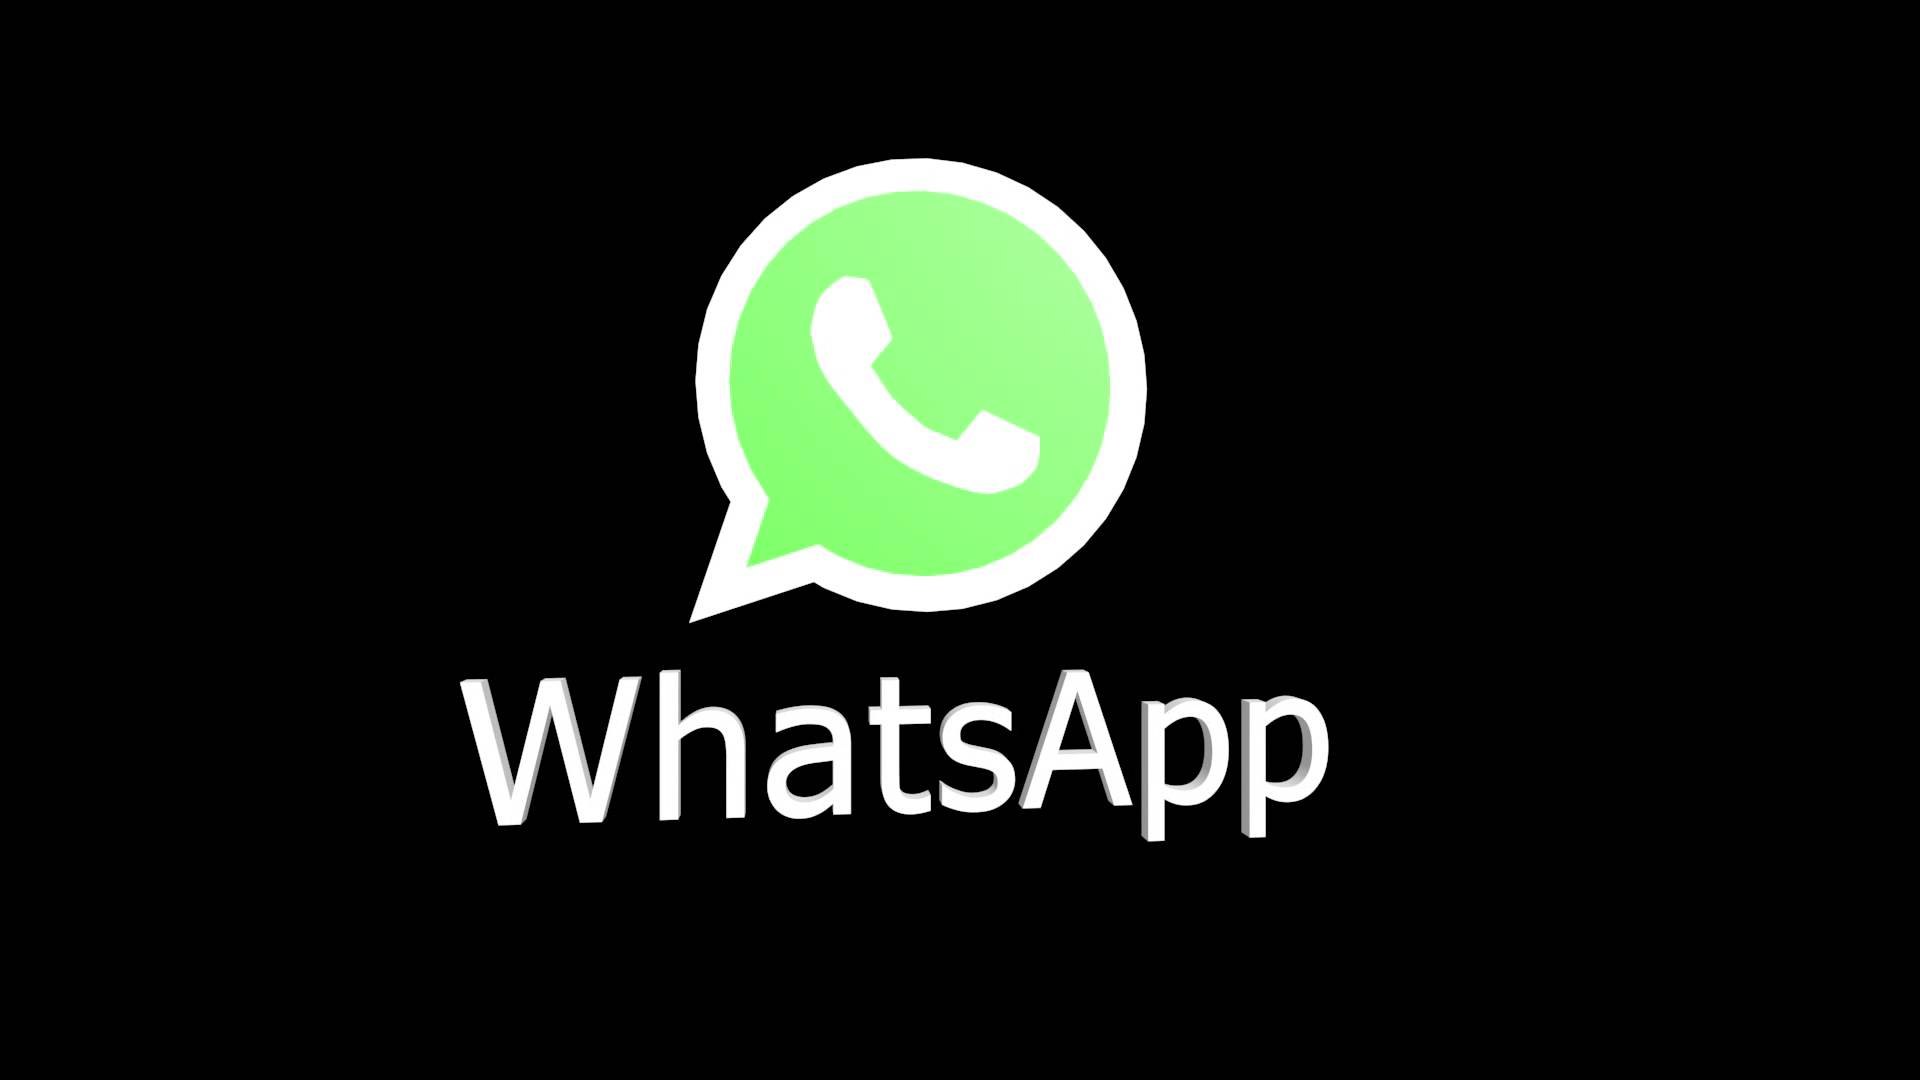 Whatsapp Background. Whatsapp Wallpaper